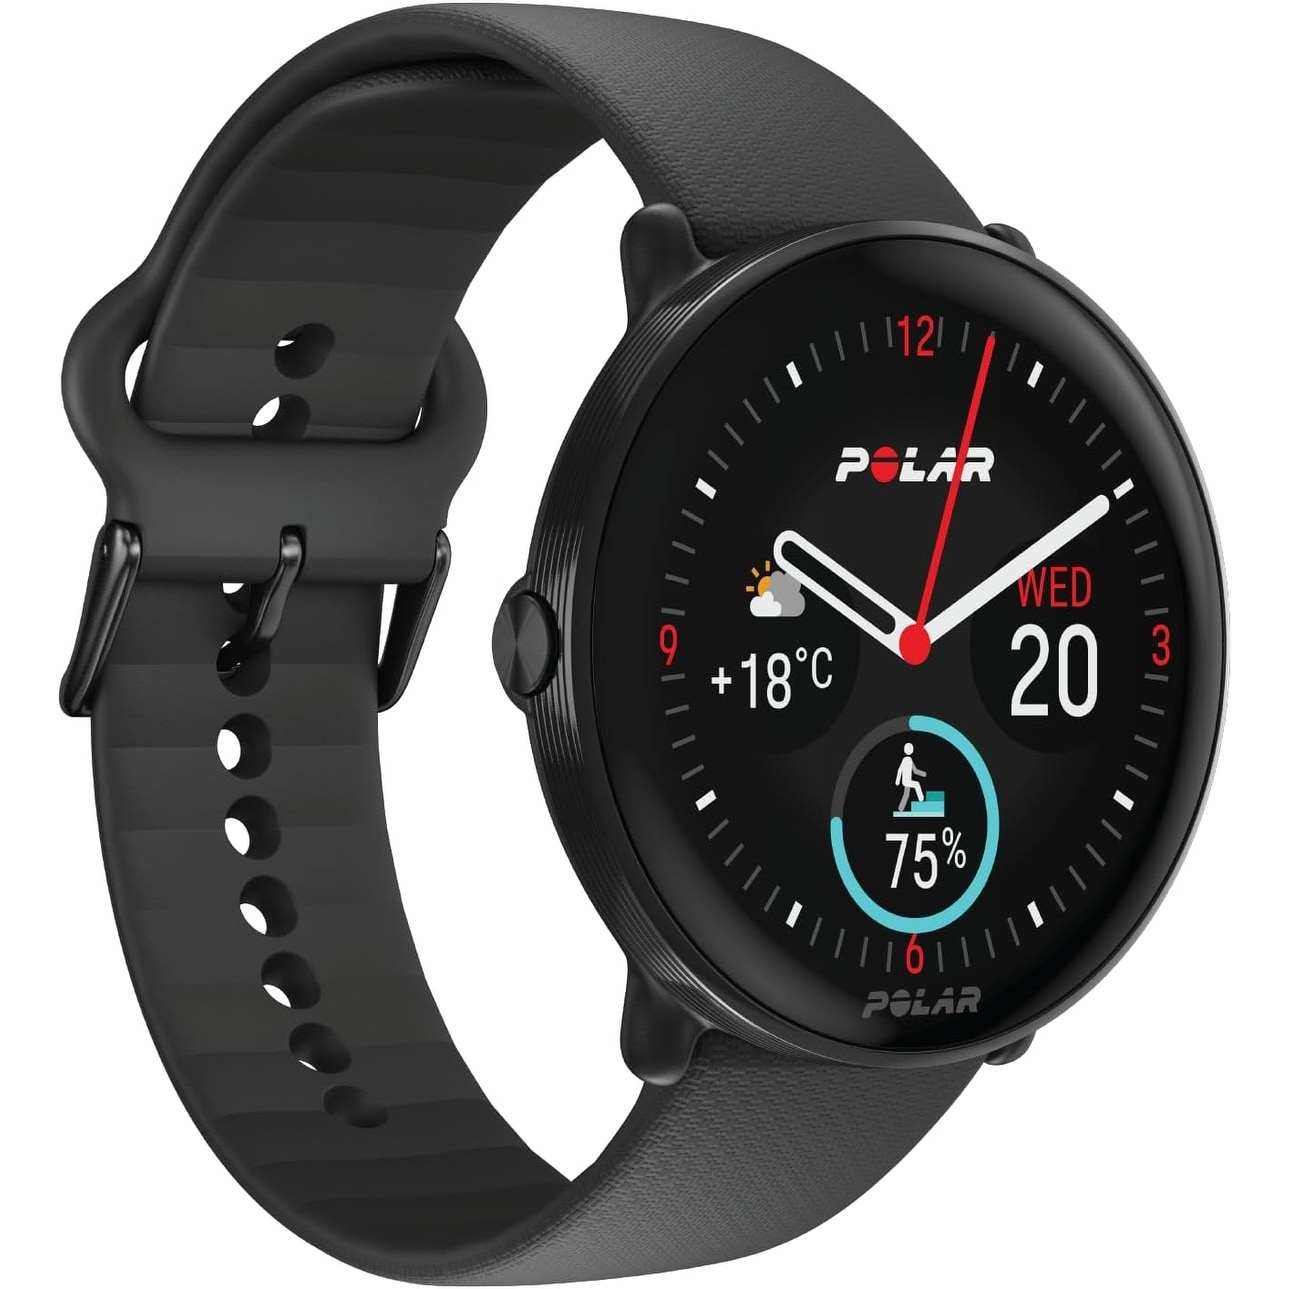 Polar Ignite 3 Fitness & Wellness GPS Watch